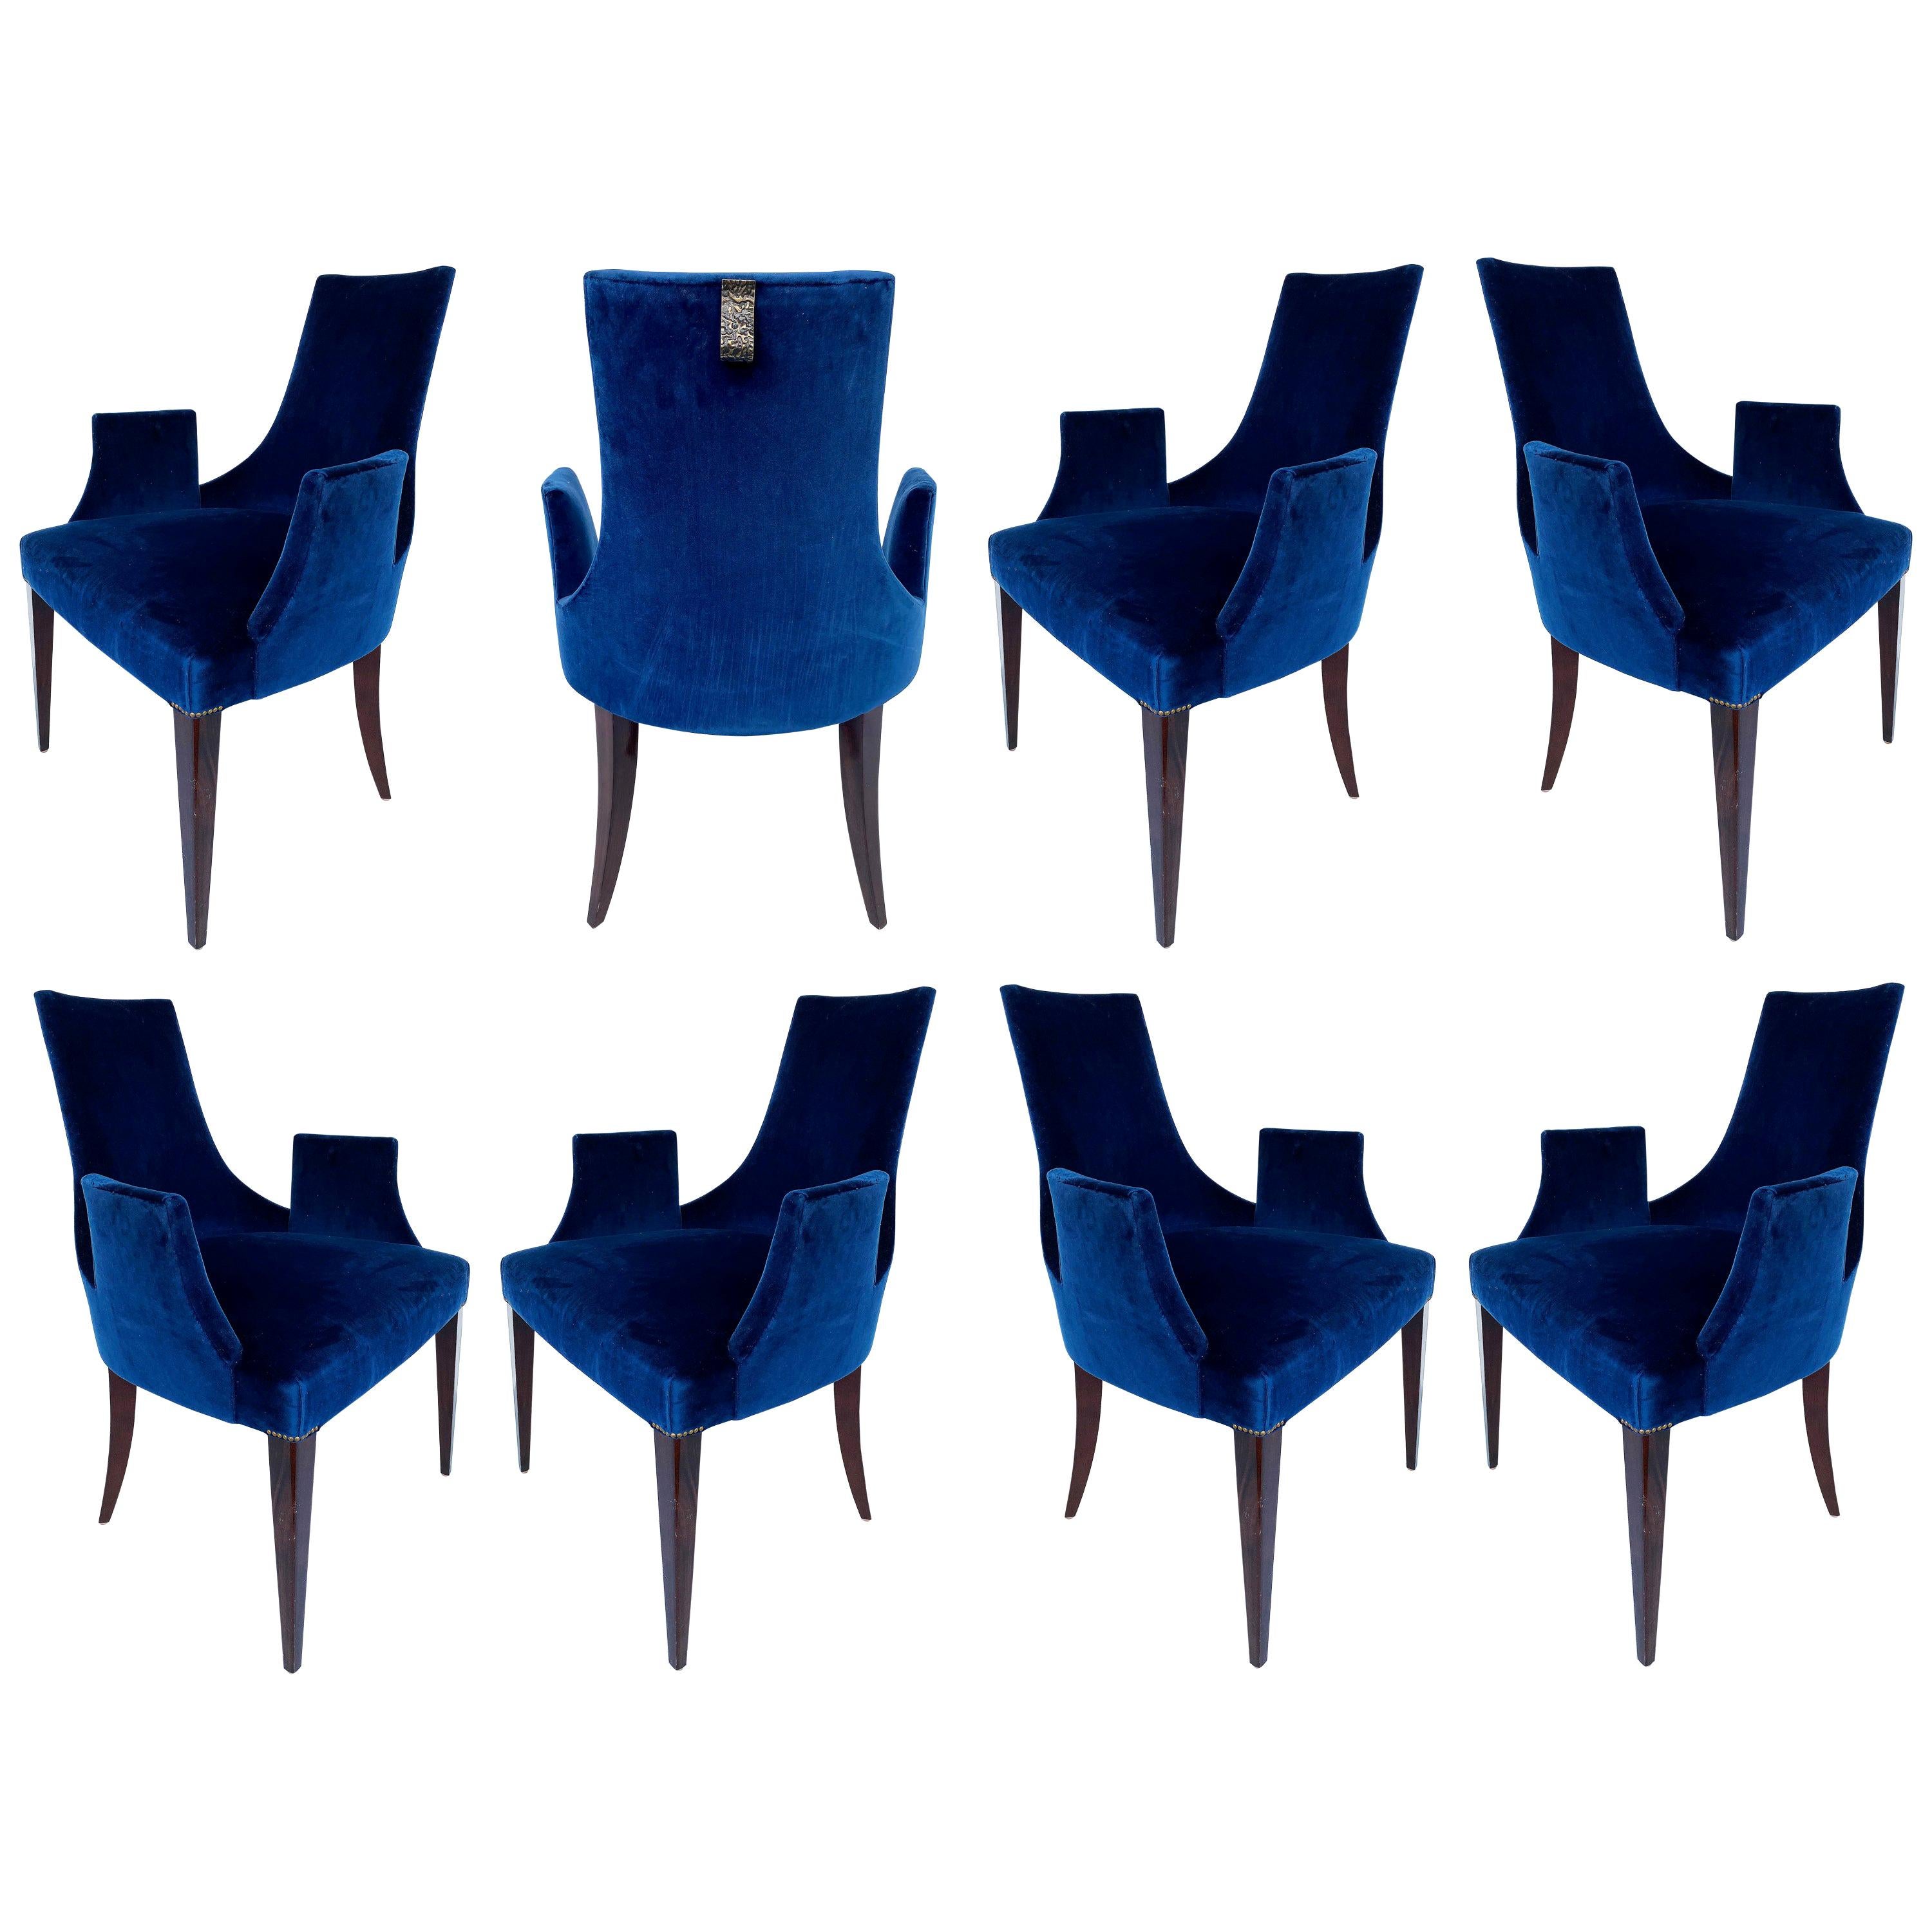 Baker Thomas Pheasant "Shell" Dining Chairs, Set of 8 in Navy Velvet